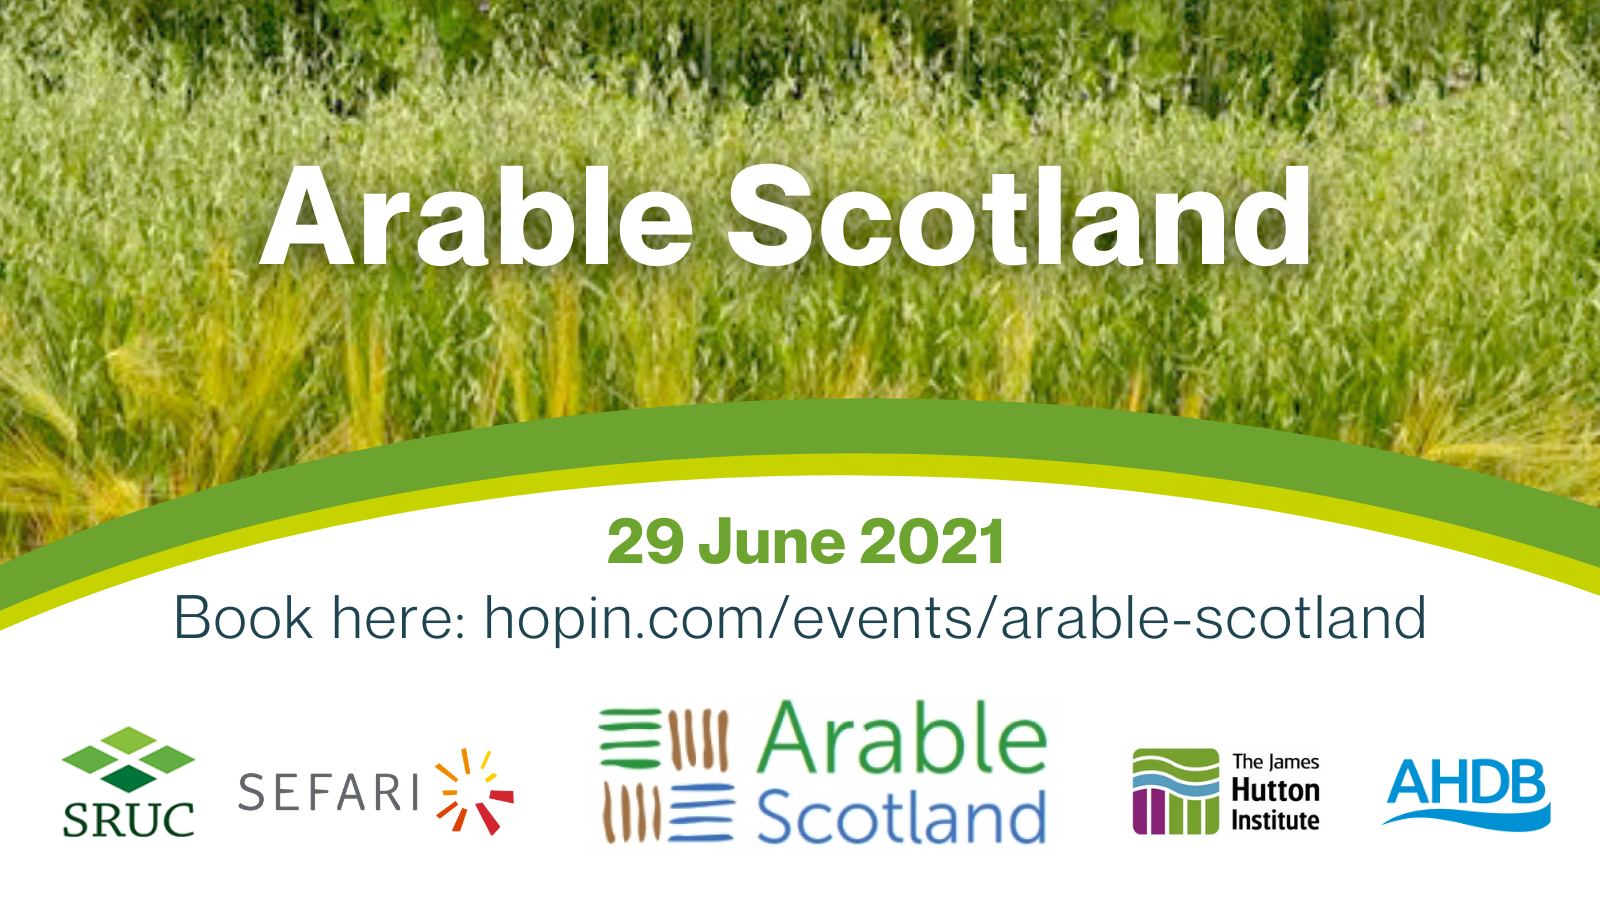 Arable Scotland promotional image